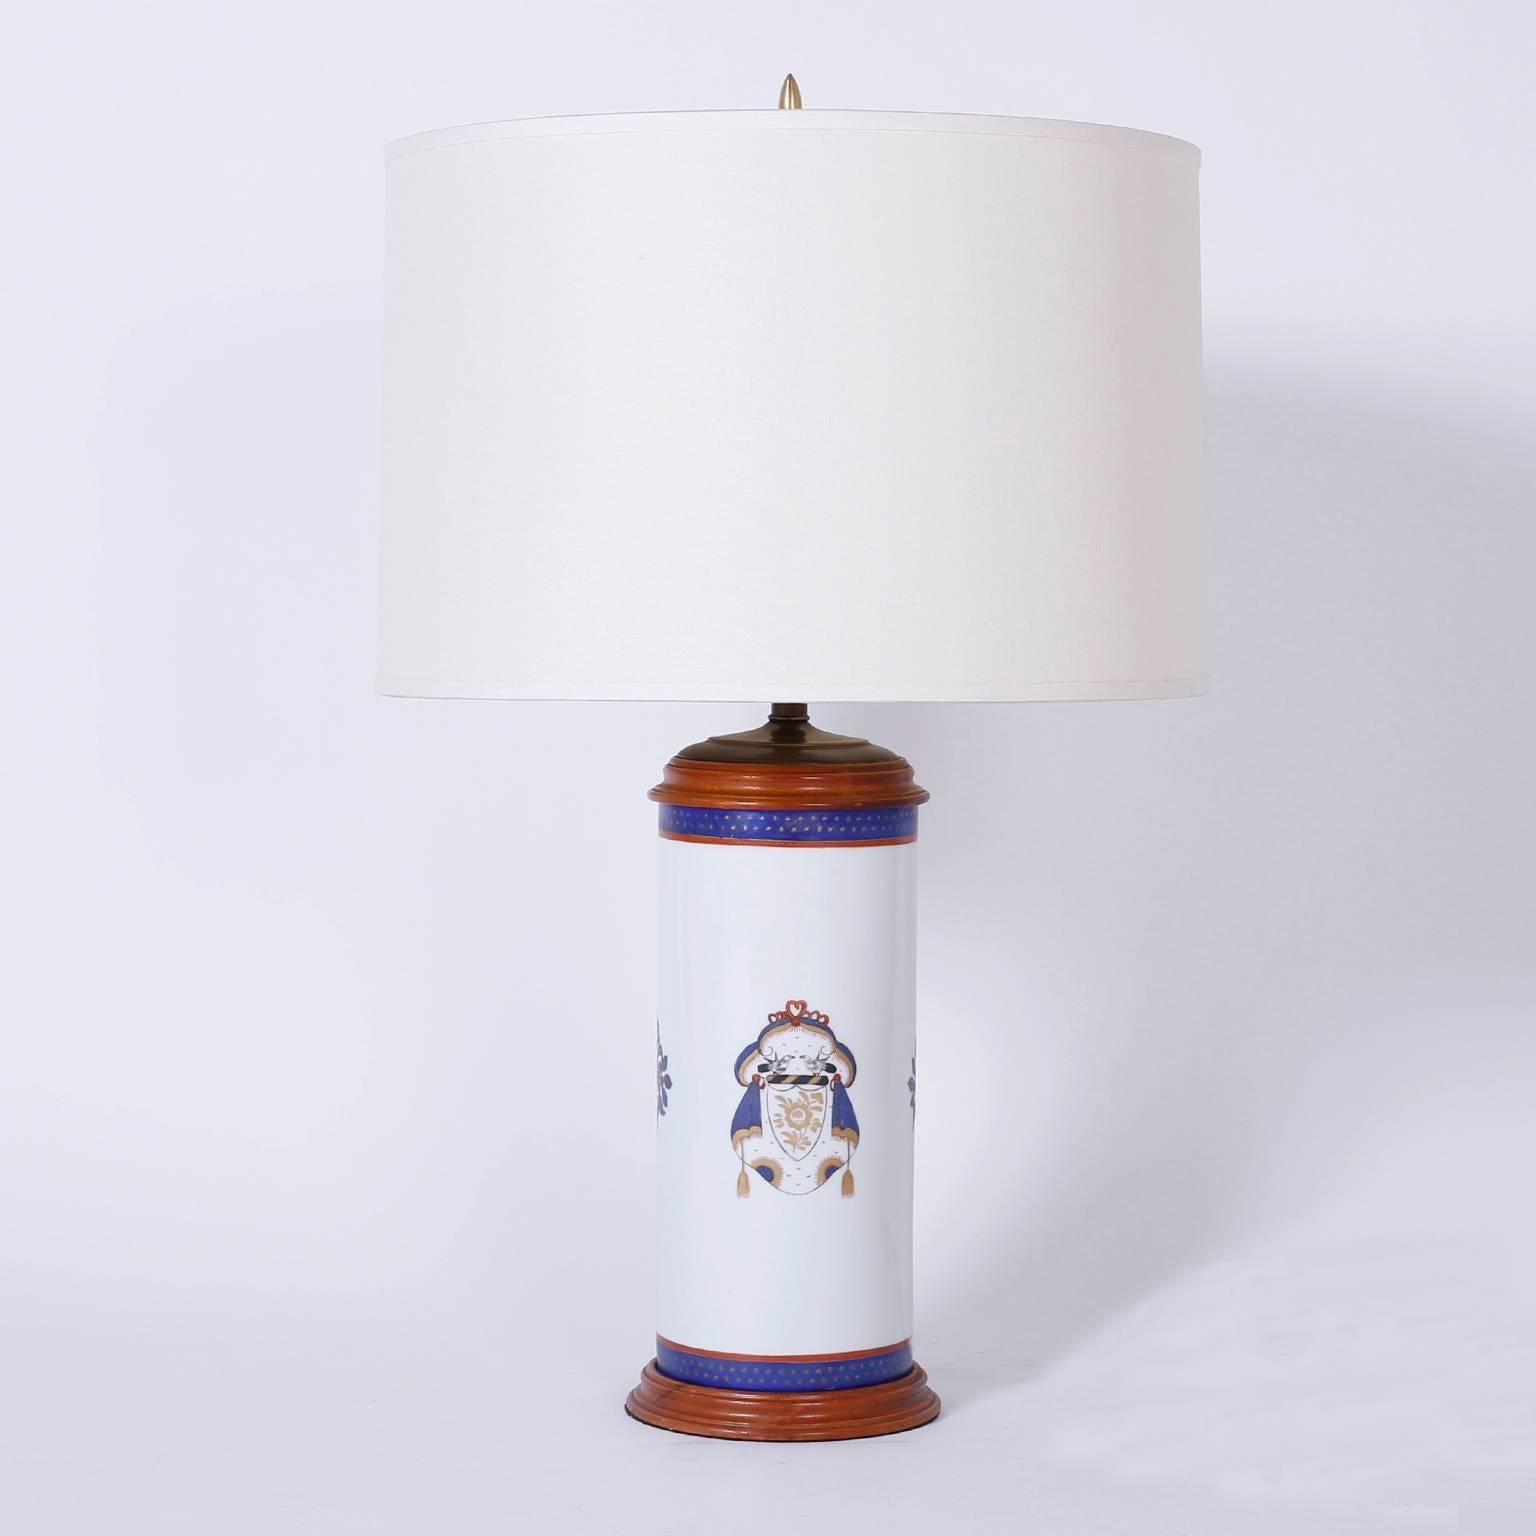 Hübsches Paar Porzellan-Tischlampen, handbemalt mit heraldischen Wappen und floralen Medaillons auf weißem Grund.